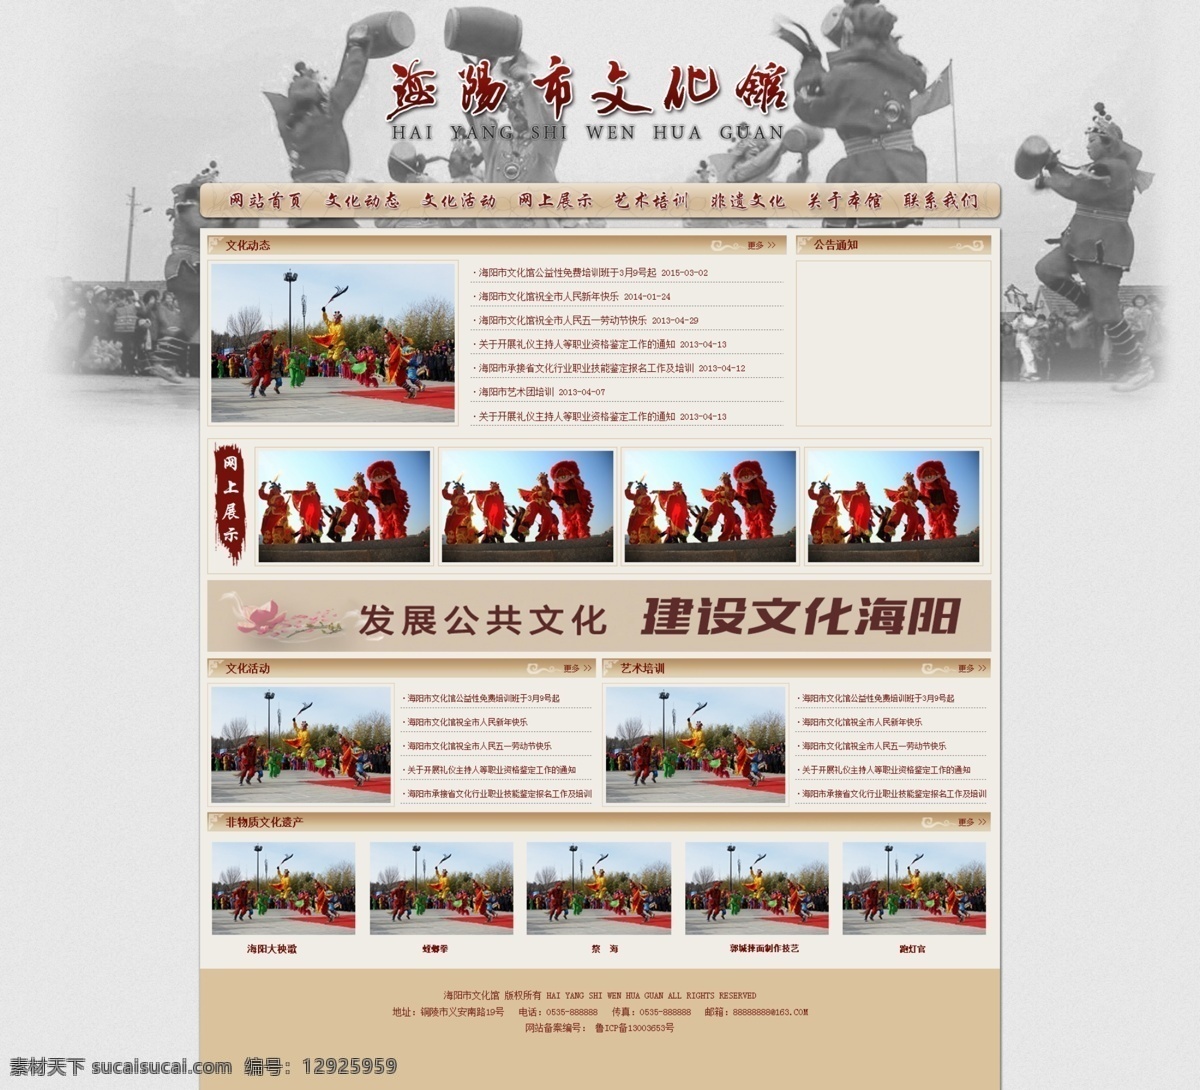 文化馆网站 文化馆 网站 首页 文化 复古 web 界面设计 中文模板 白色